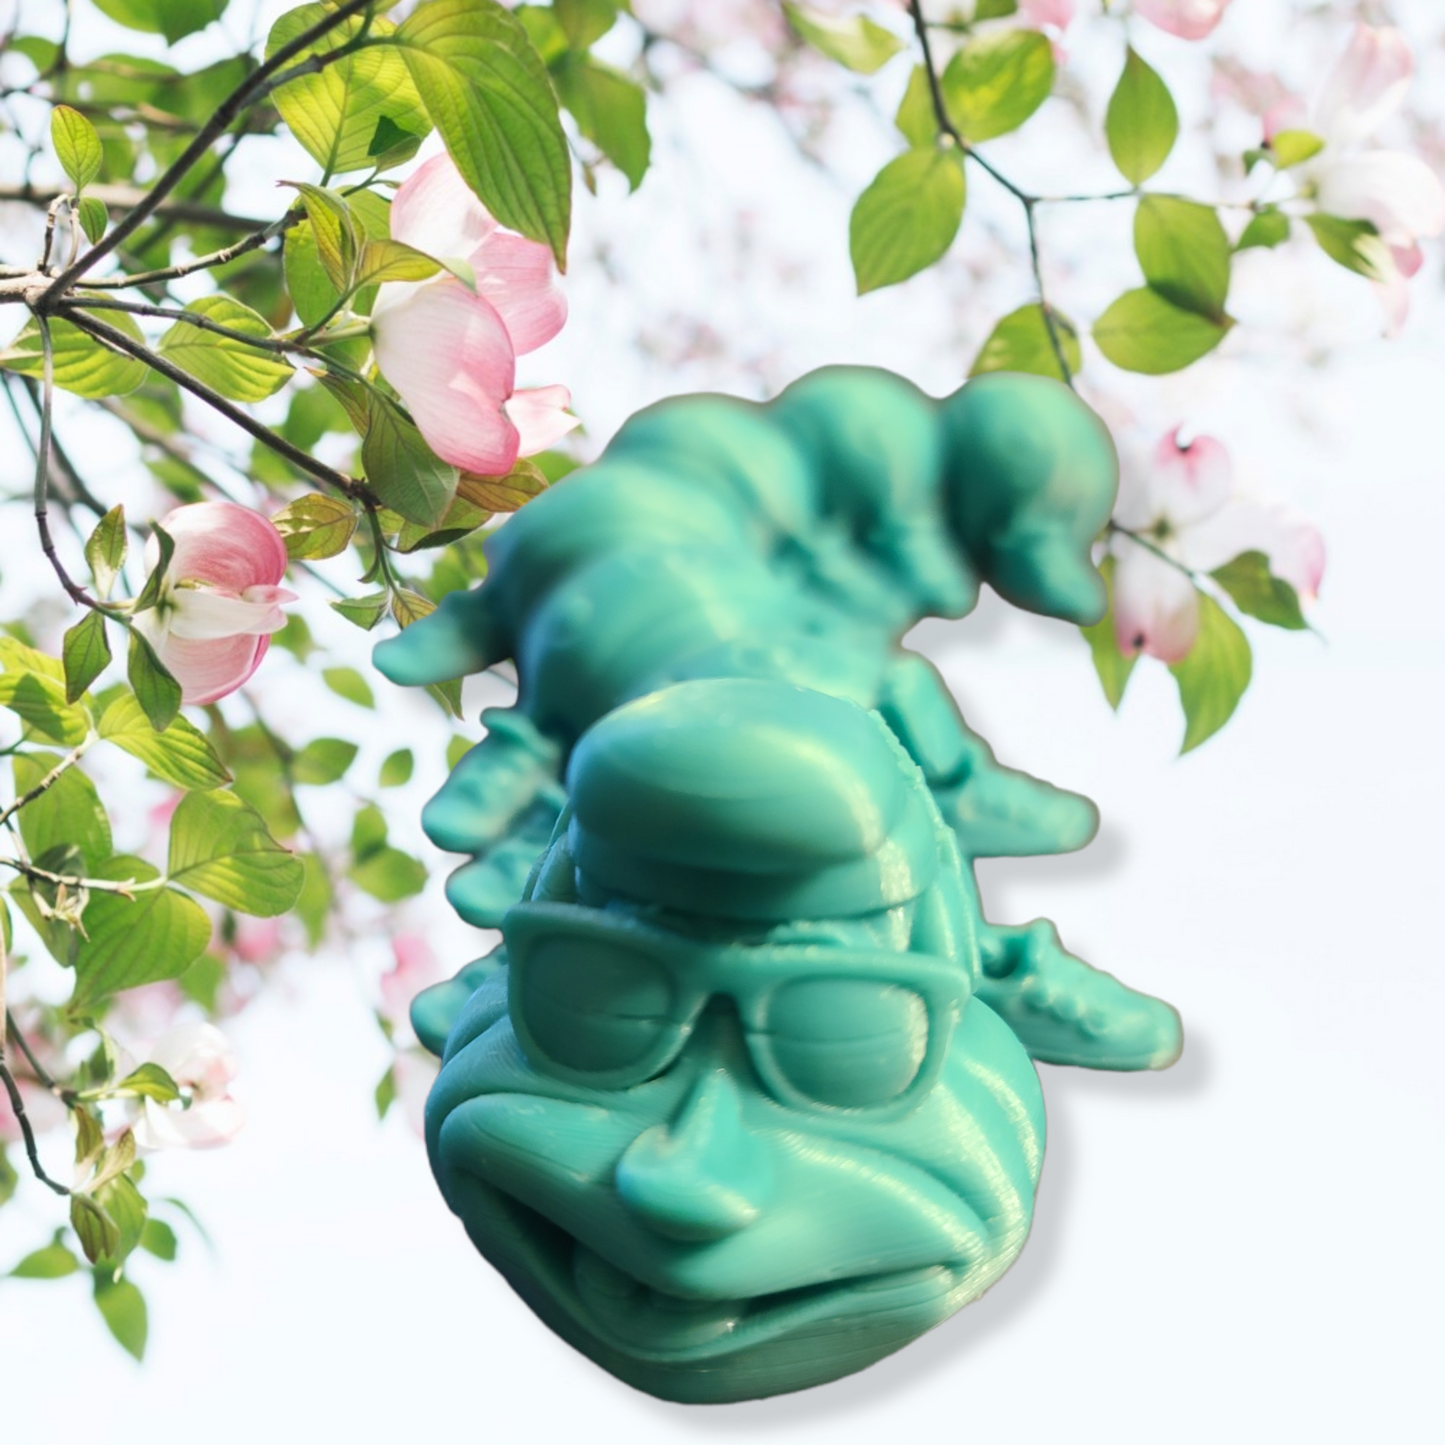 3D Printed Flexi Caterpillar